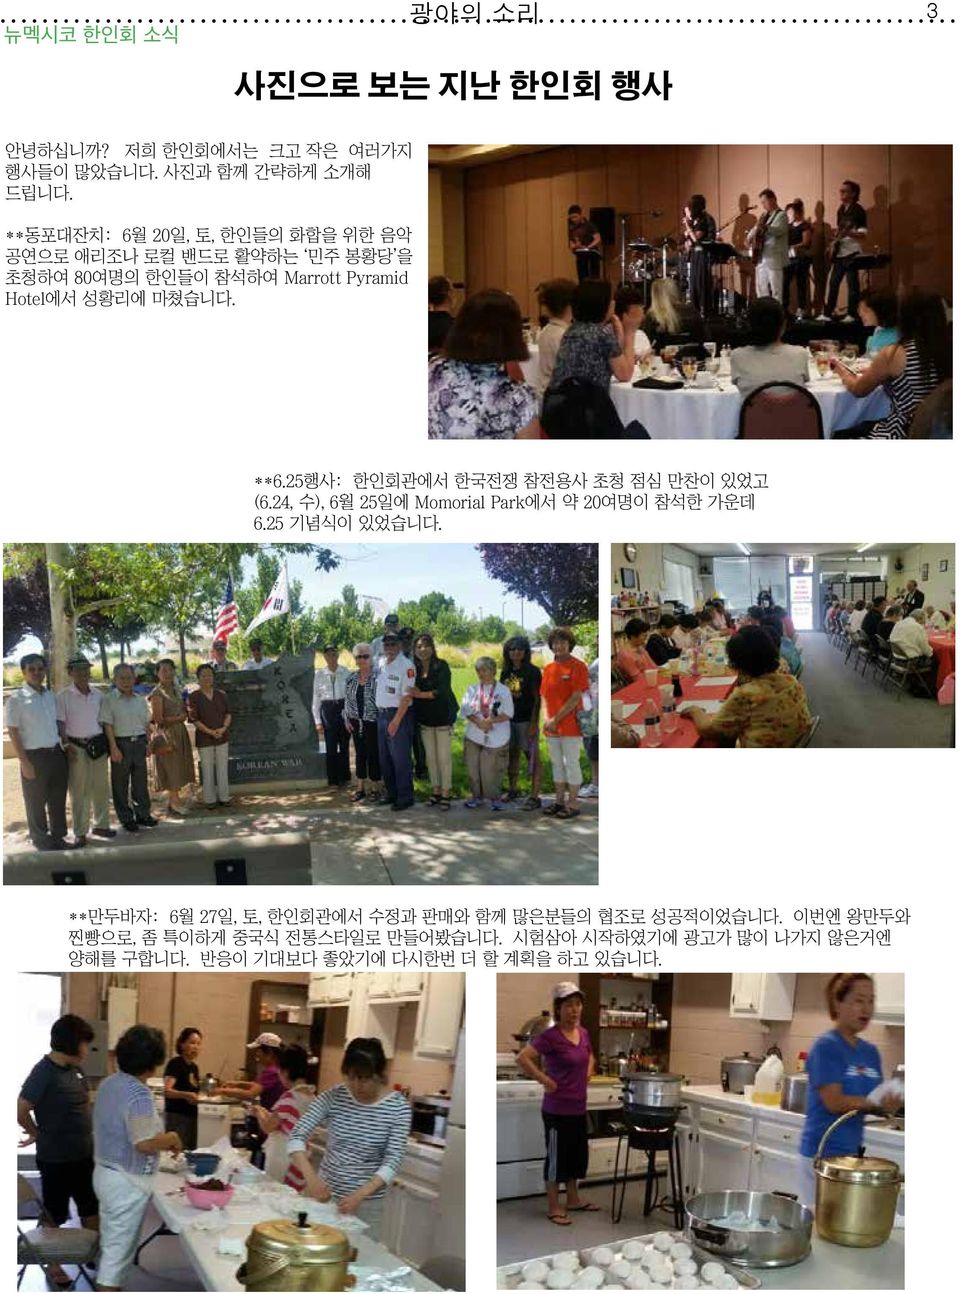 25행사: 한인회관에서 한국전쟁 참전용사 초청 점심 만찬이 있었고 (6.24, 수), 6월 25일에 Momorial Park에서 약 20여명이 참석한 가운데 6.25 기념식이 있었습니다.